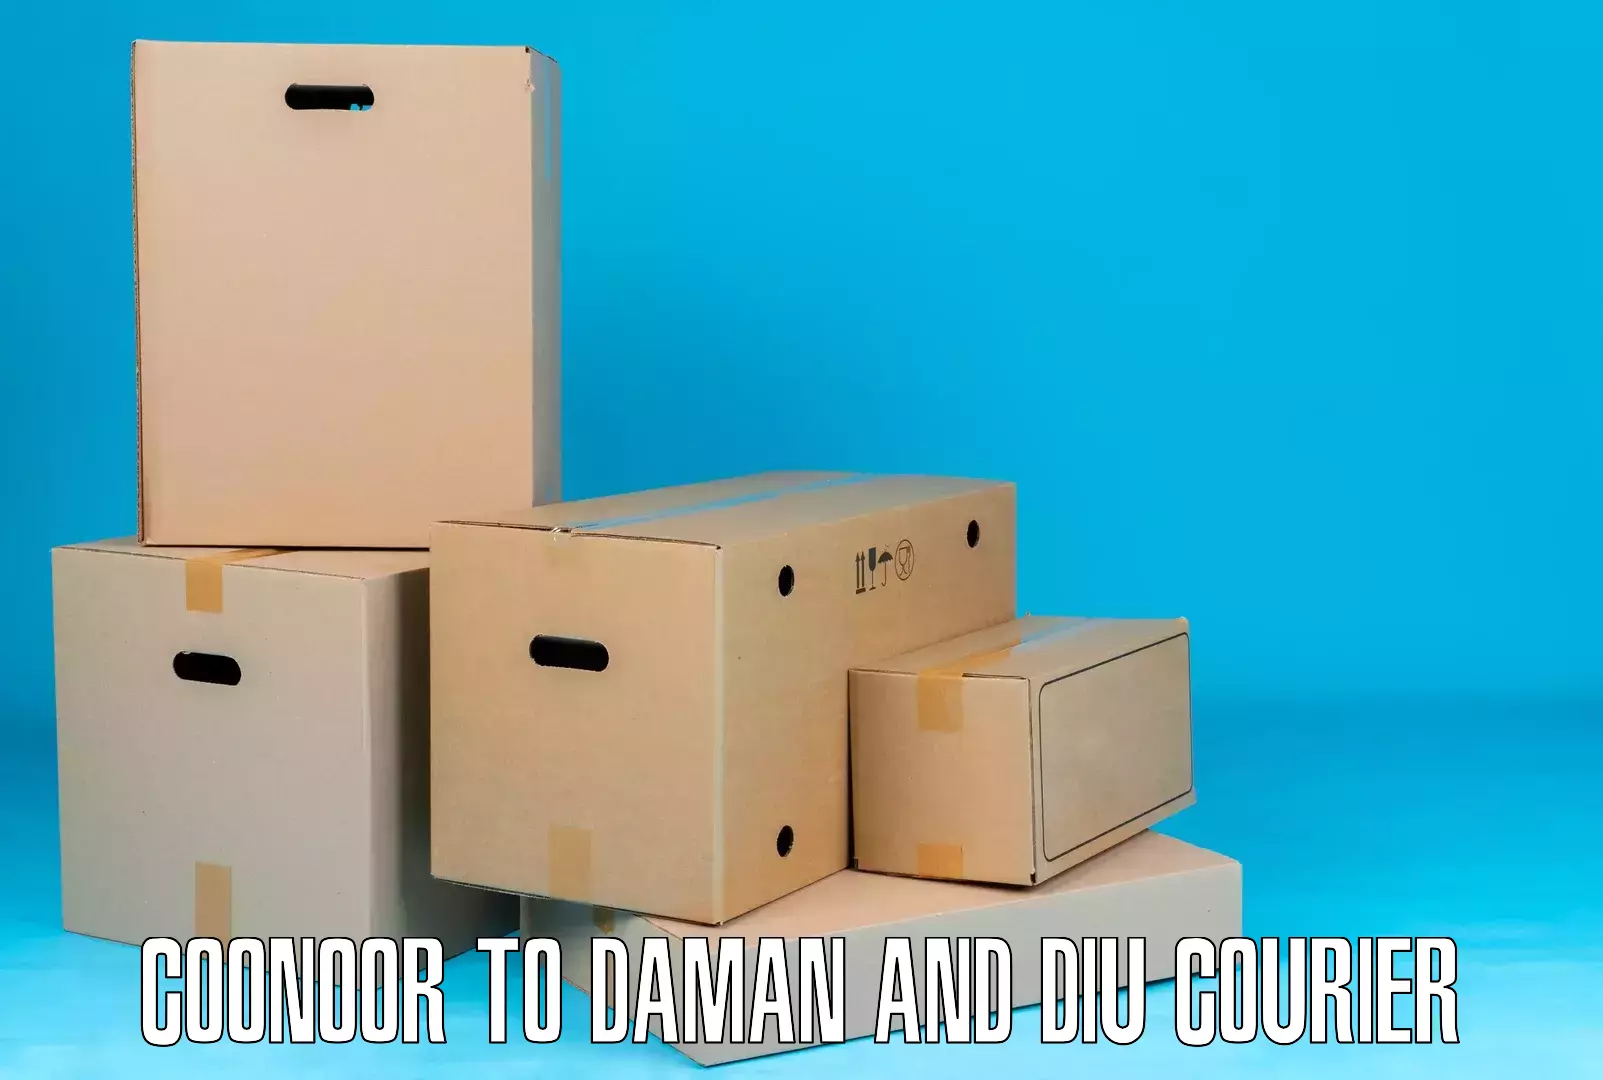 Flexible delivery schedules Coonoor to Diu